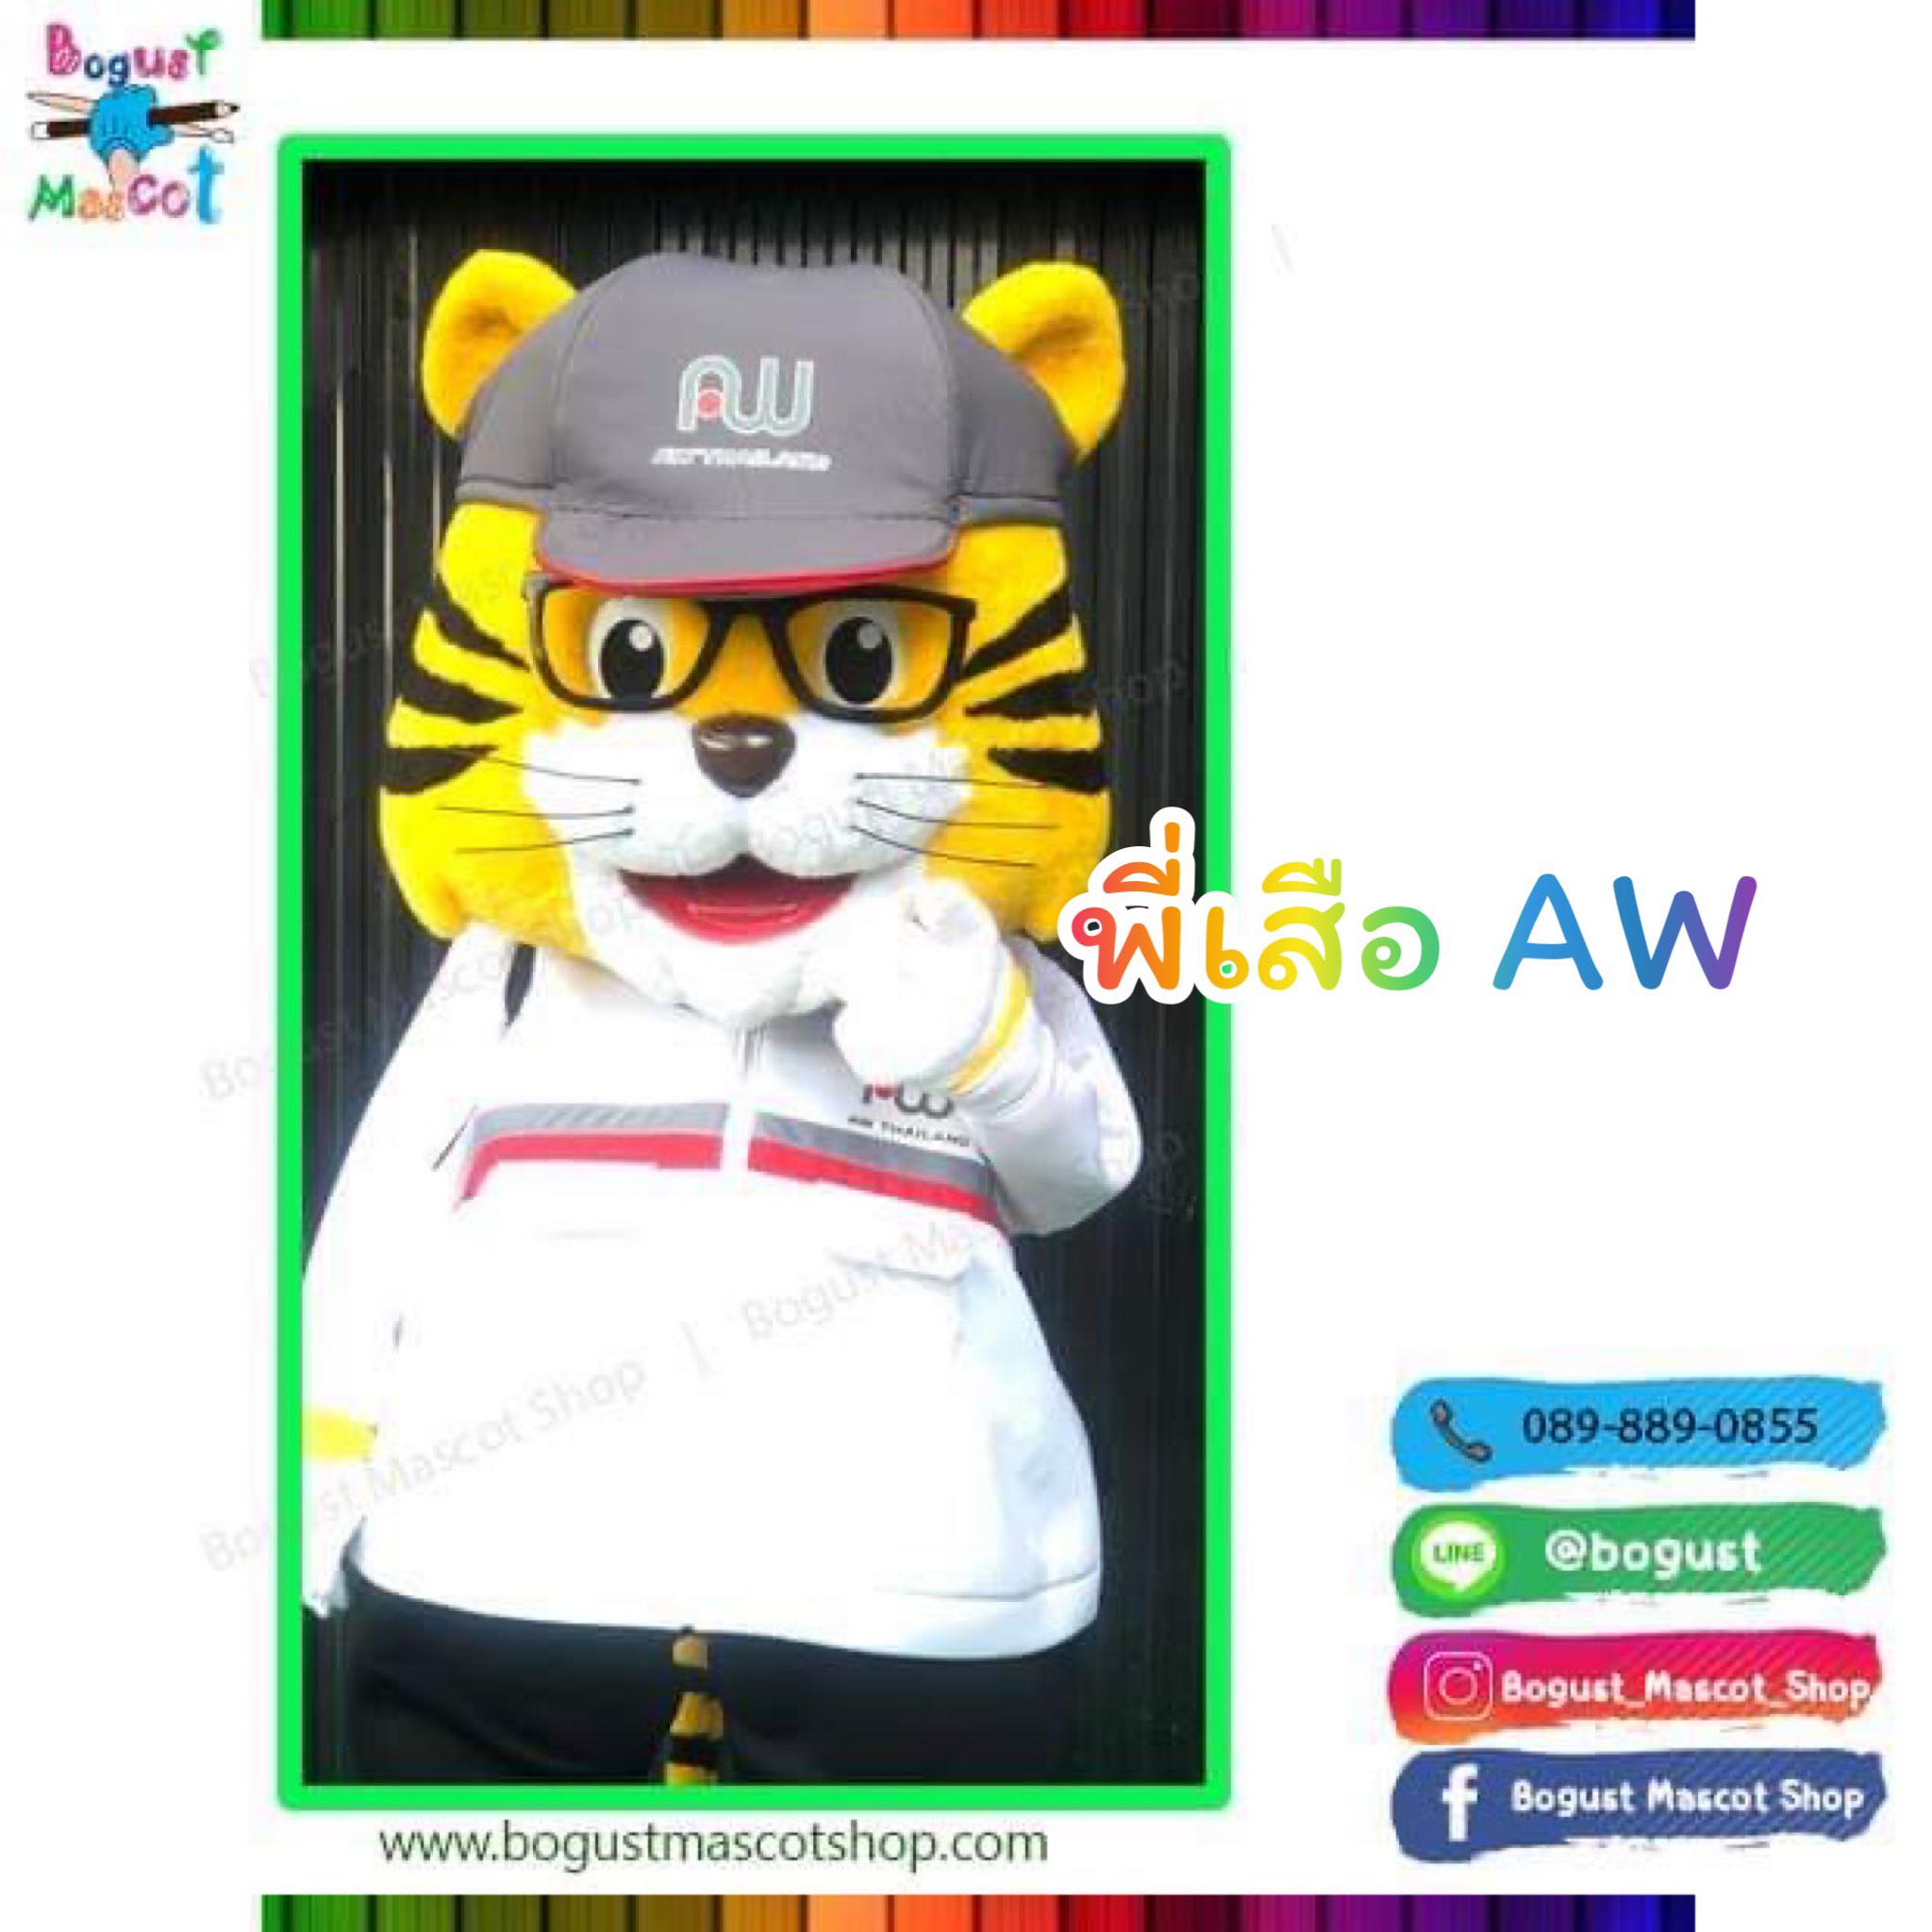 มาสคอต (Mascot) --- > เสือ AW